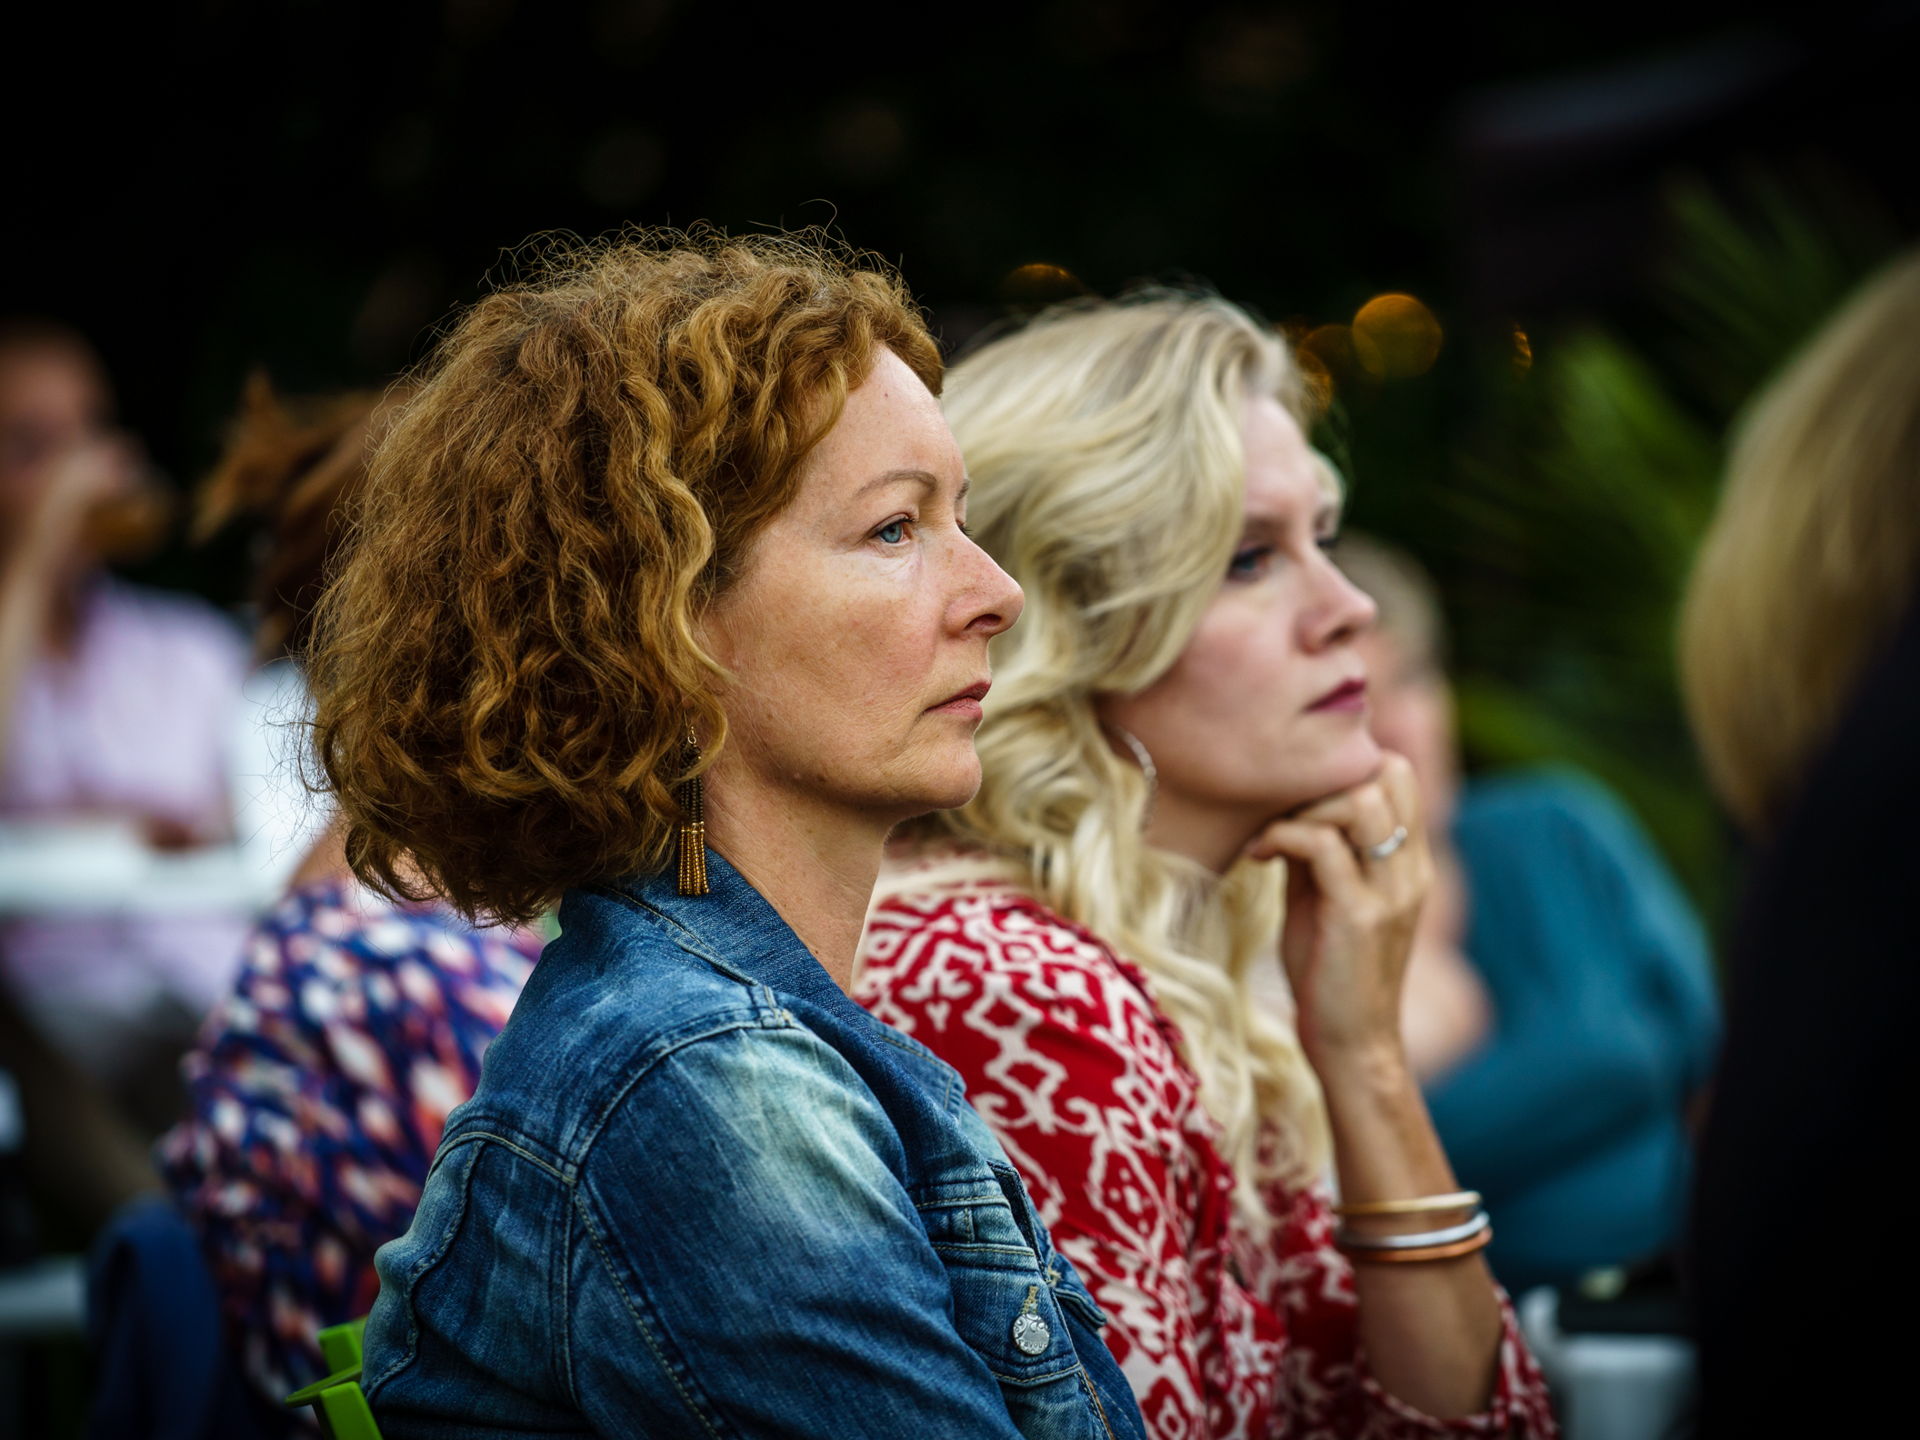 Photo Anya fotografeerde bij het tuinconcert van Frank Boeijen op 17 juli 2021 in Hoogeveen